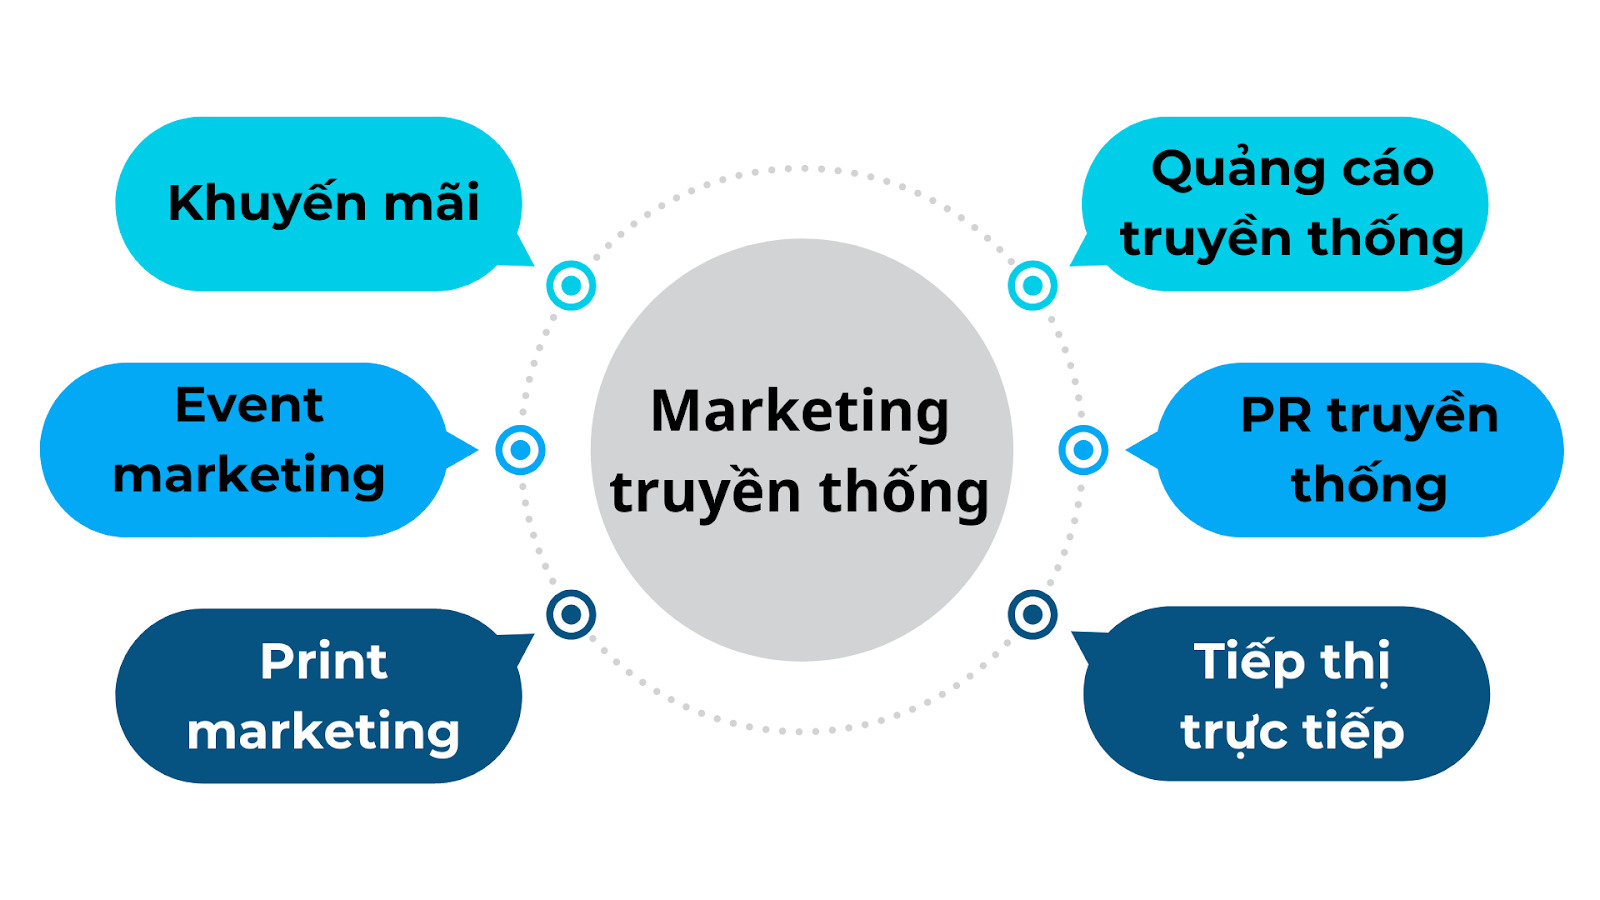 6 thành phần chính trong marketing truyền thống